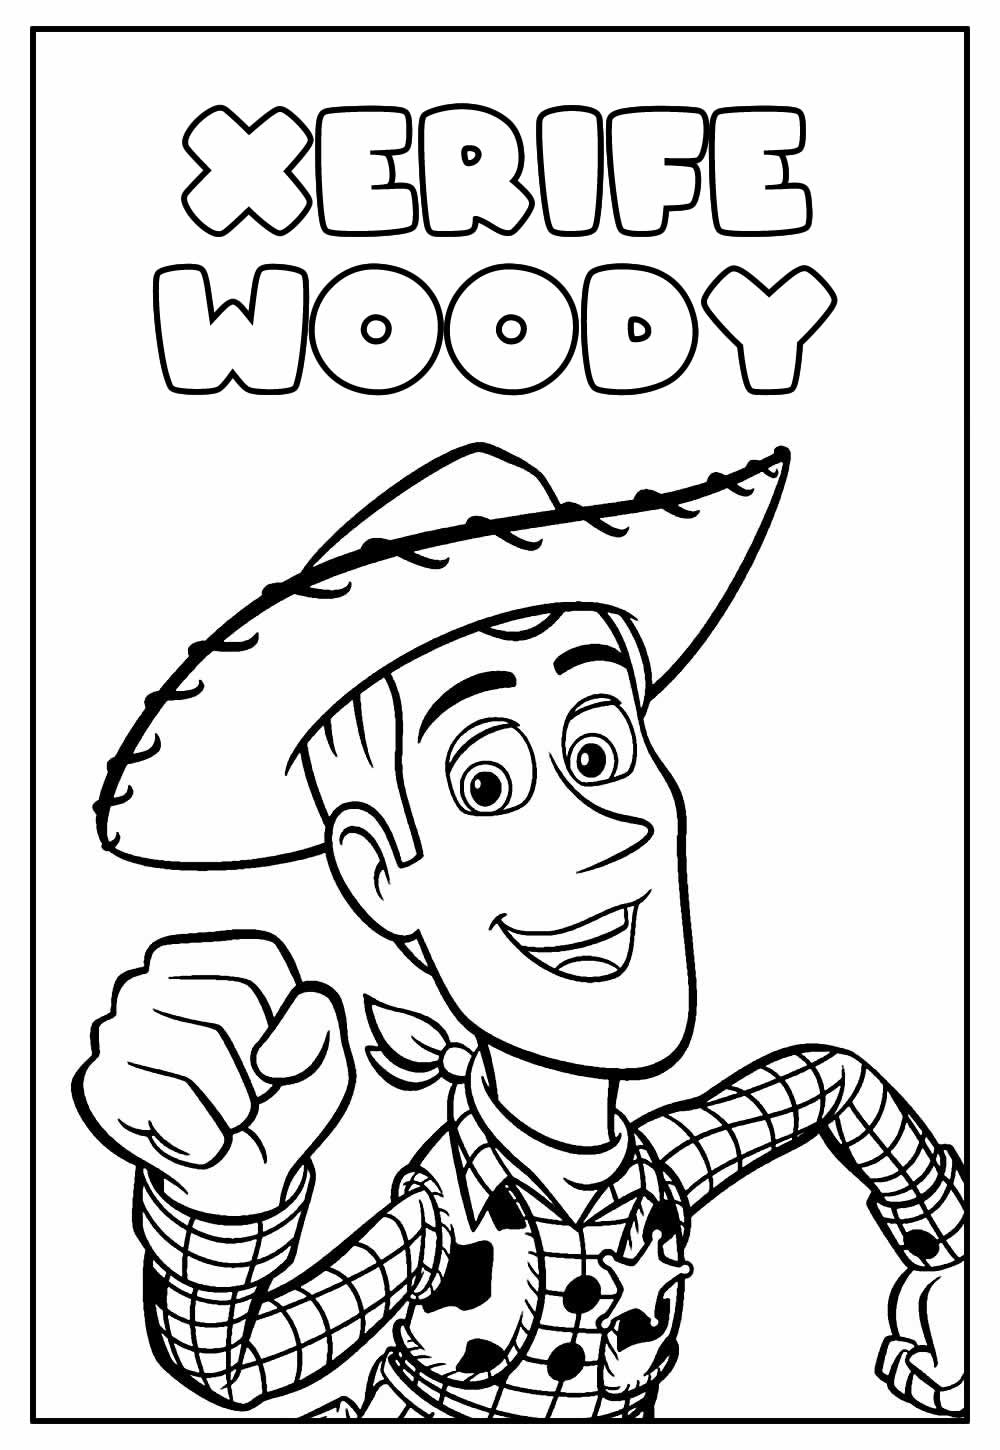 Desenho Educativo de Woody para colorir